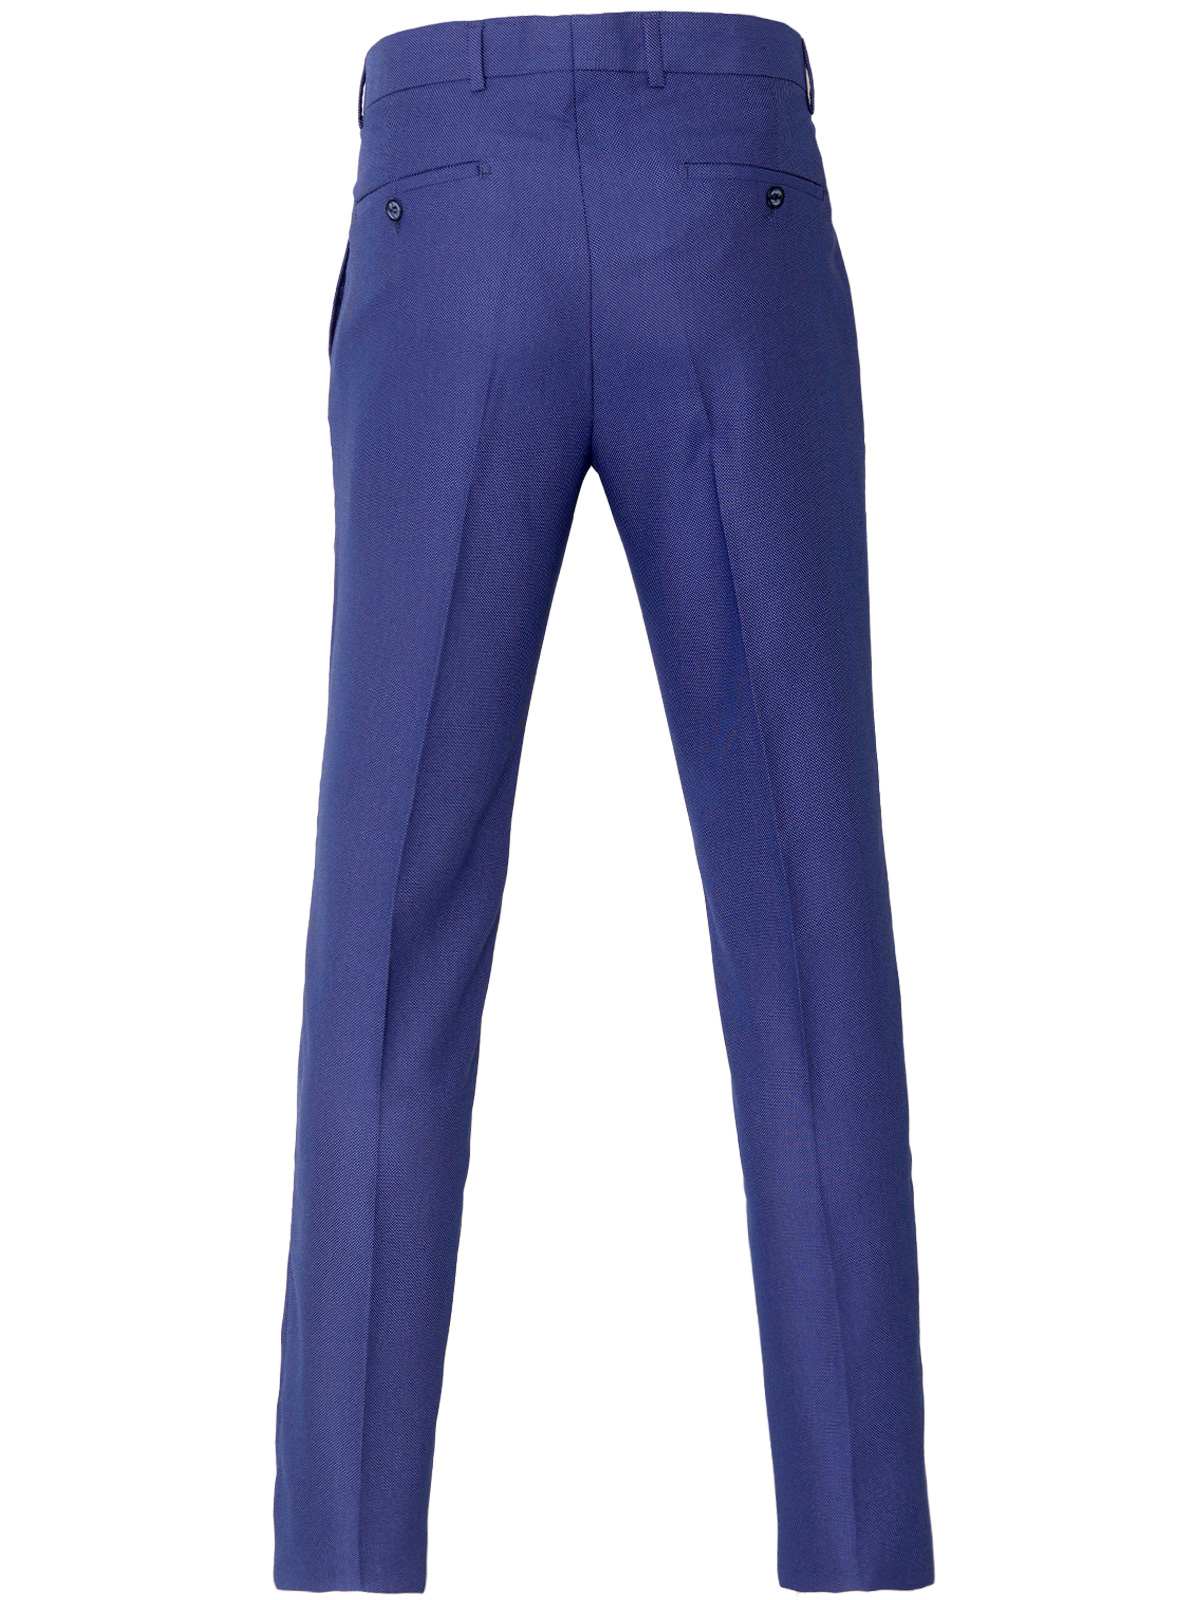 Ανδρικό παντελόνι σε κλασικό μπλε - 63341 € 62.99 img2